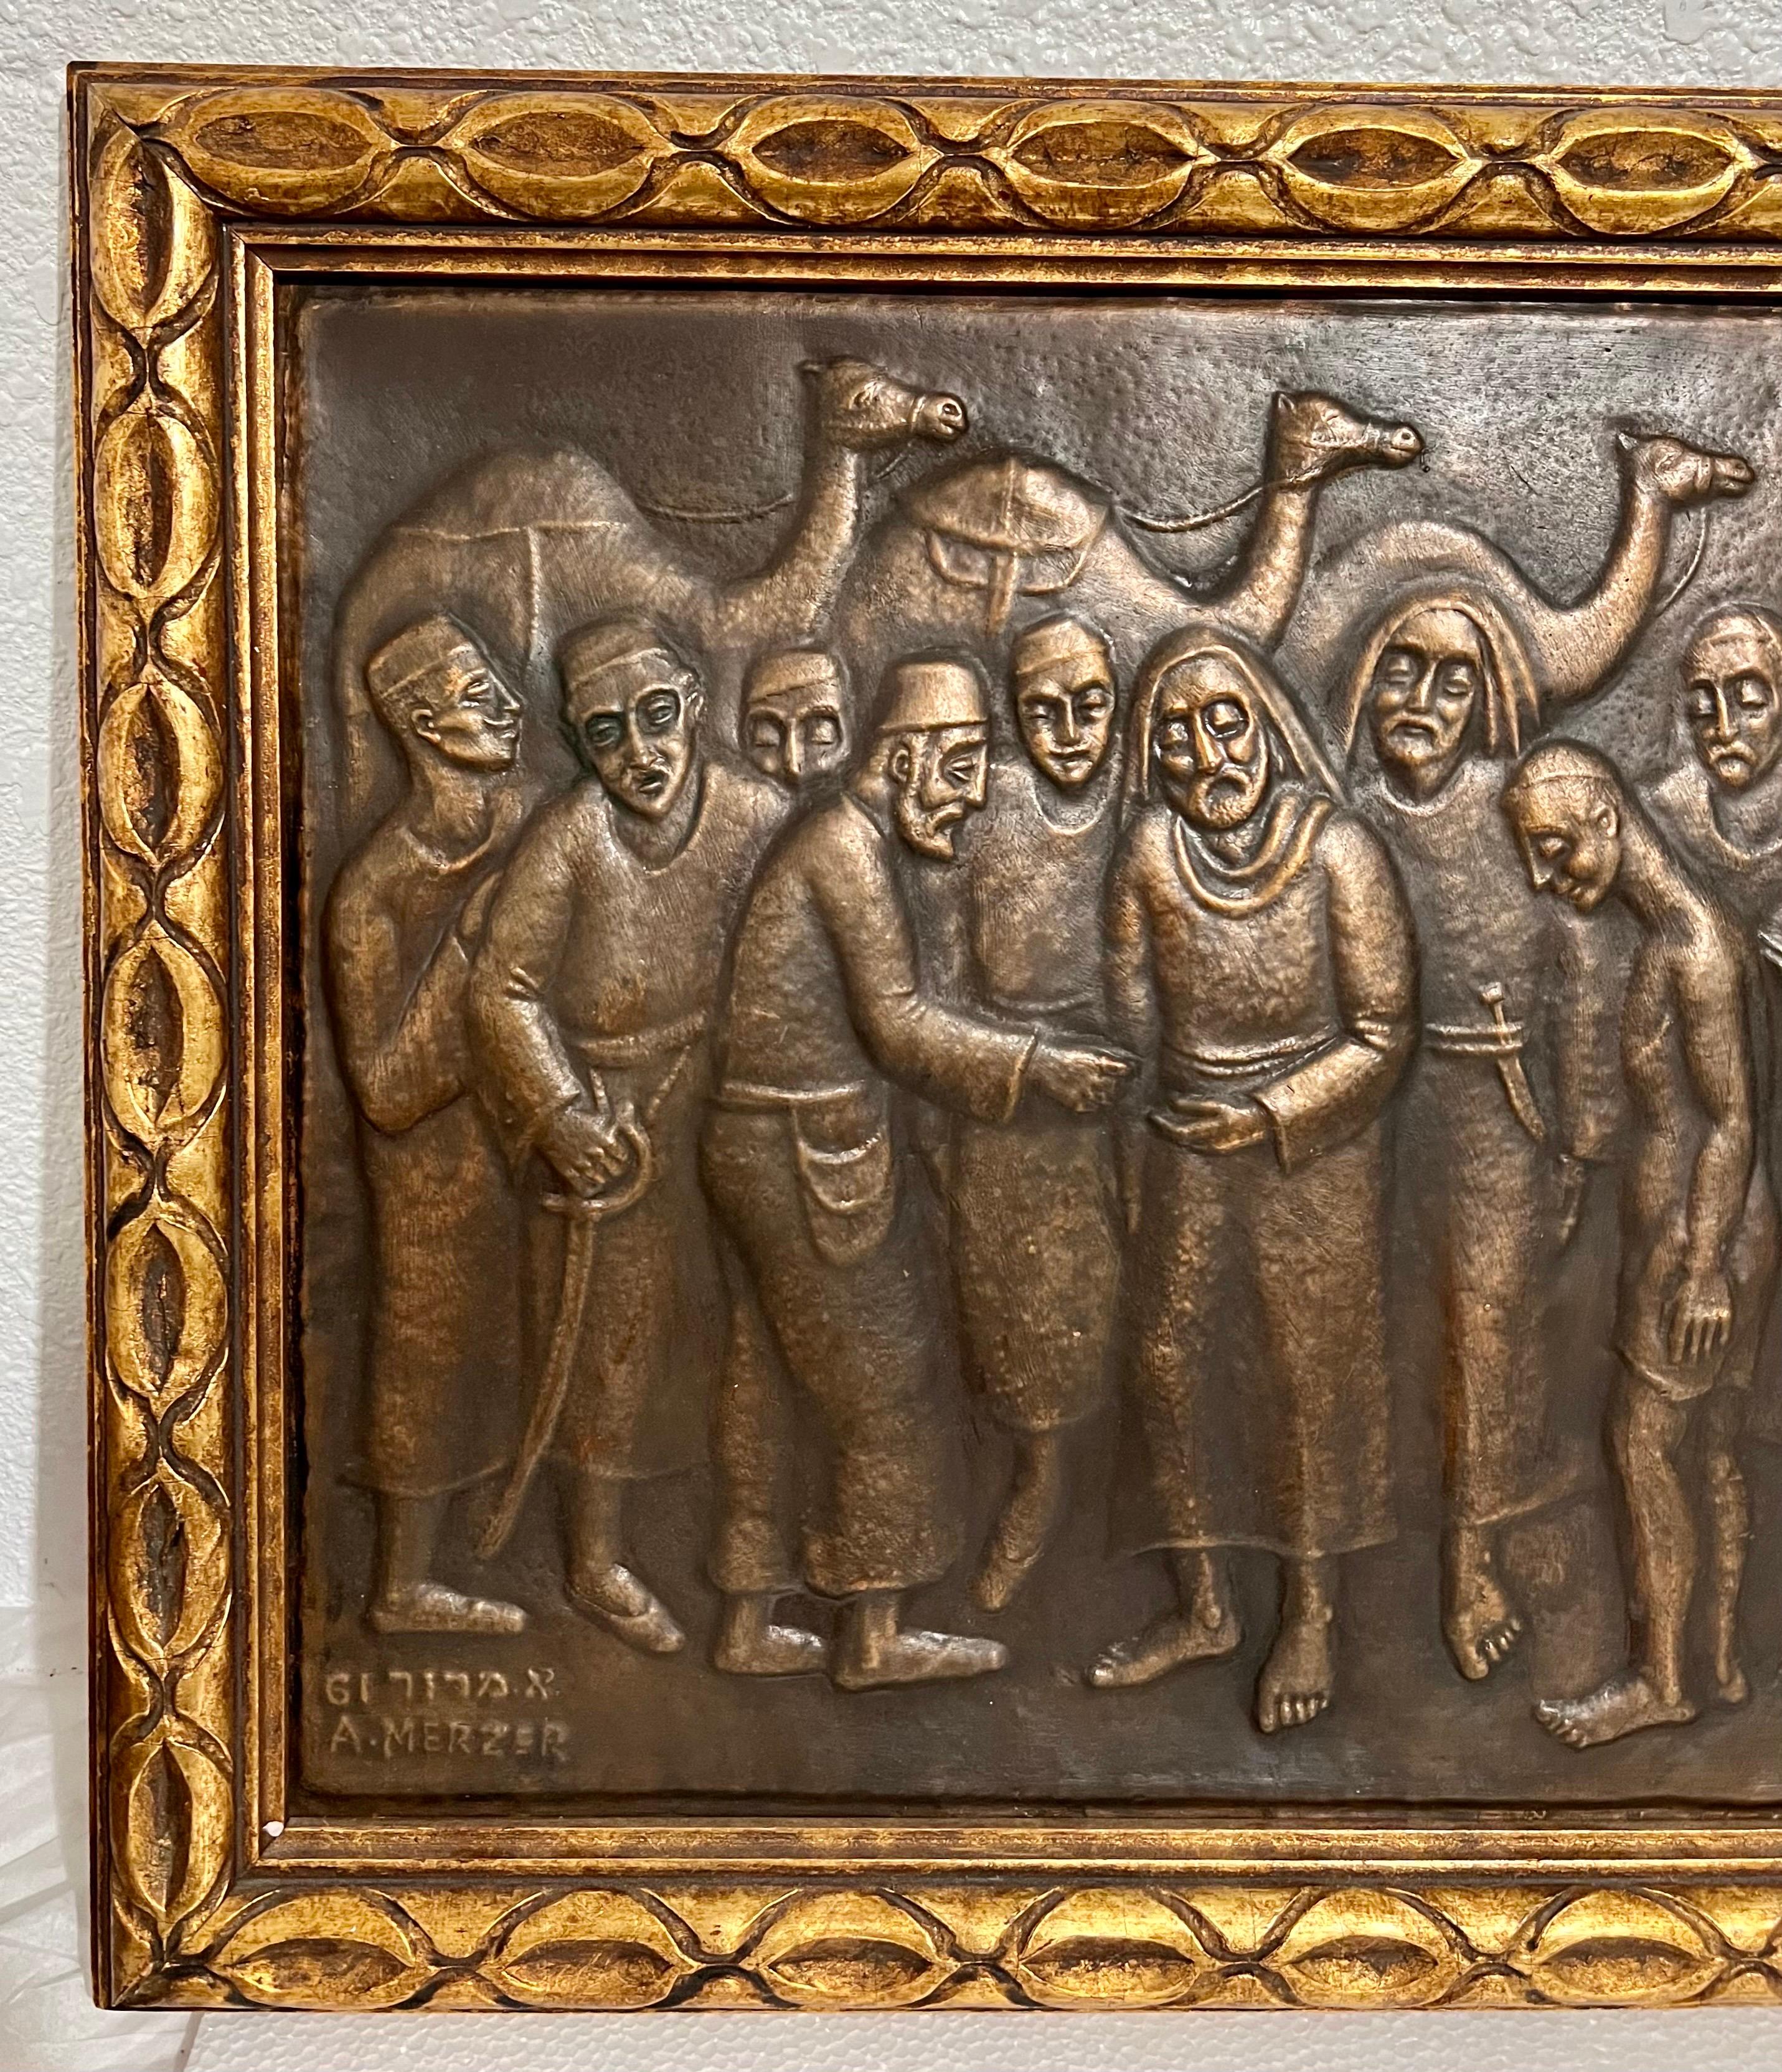 Arieh Merzer (Israeli, 1905-1966) 
Reliefplastik aus Kupfer in vergoldetem Rahmen
Gerahmte Abmessungen 18 x 26,25,  Kupfer 14,5 X 22,5

Arieh Merzer war ein bekannter israelischer Künstler und Volkskunst-Metallarbeiter. 
Arie Merzer, ein Künstler,